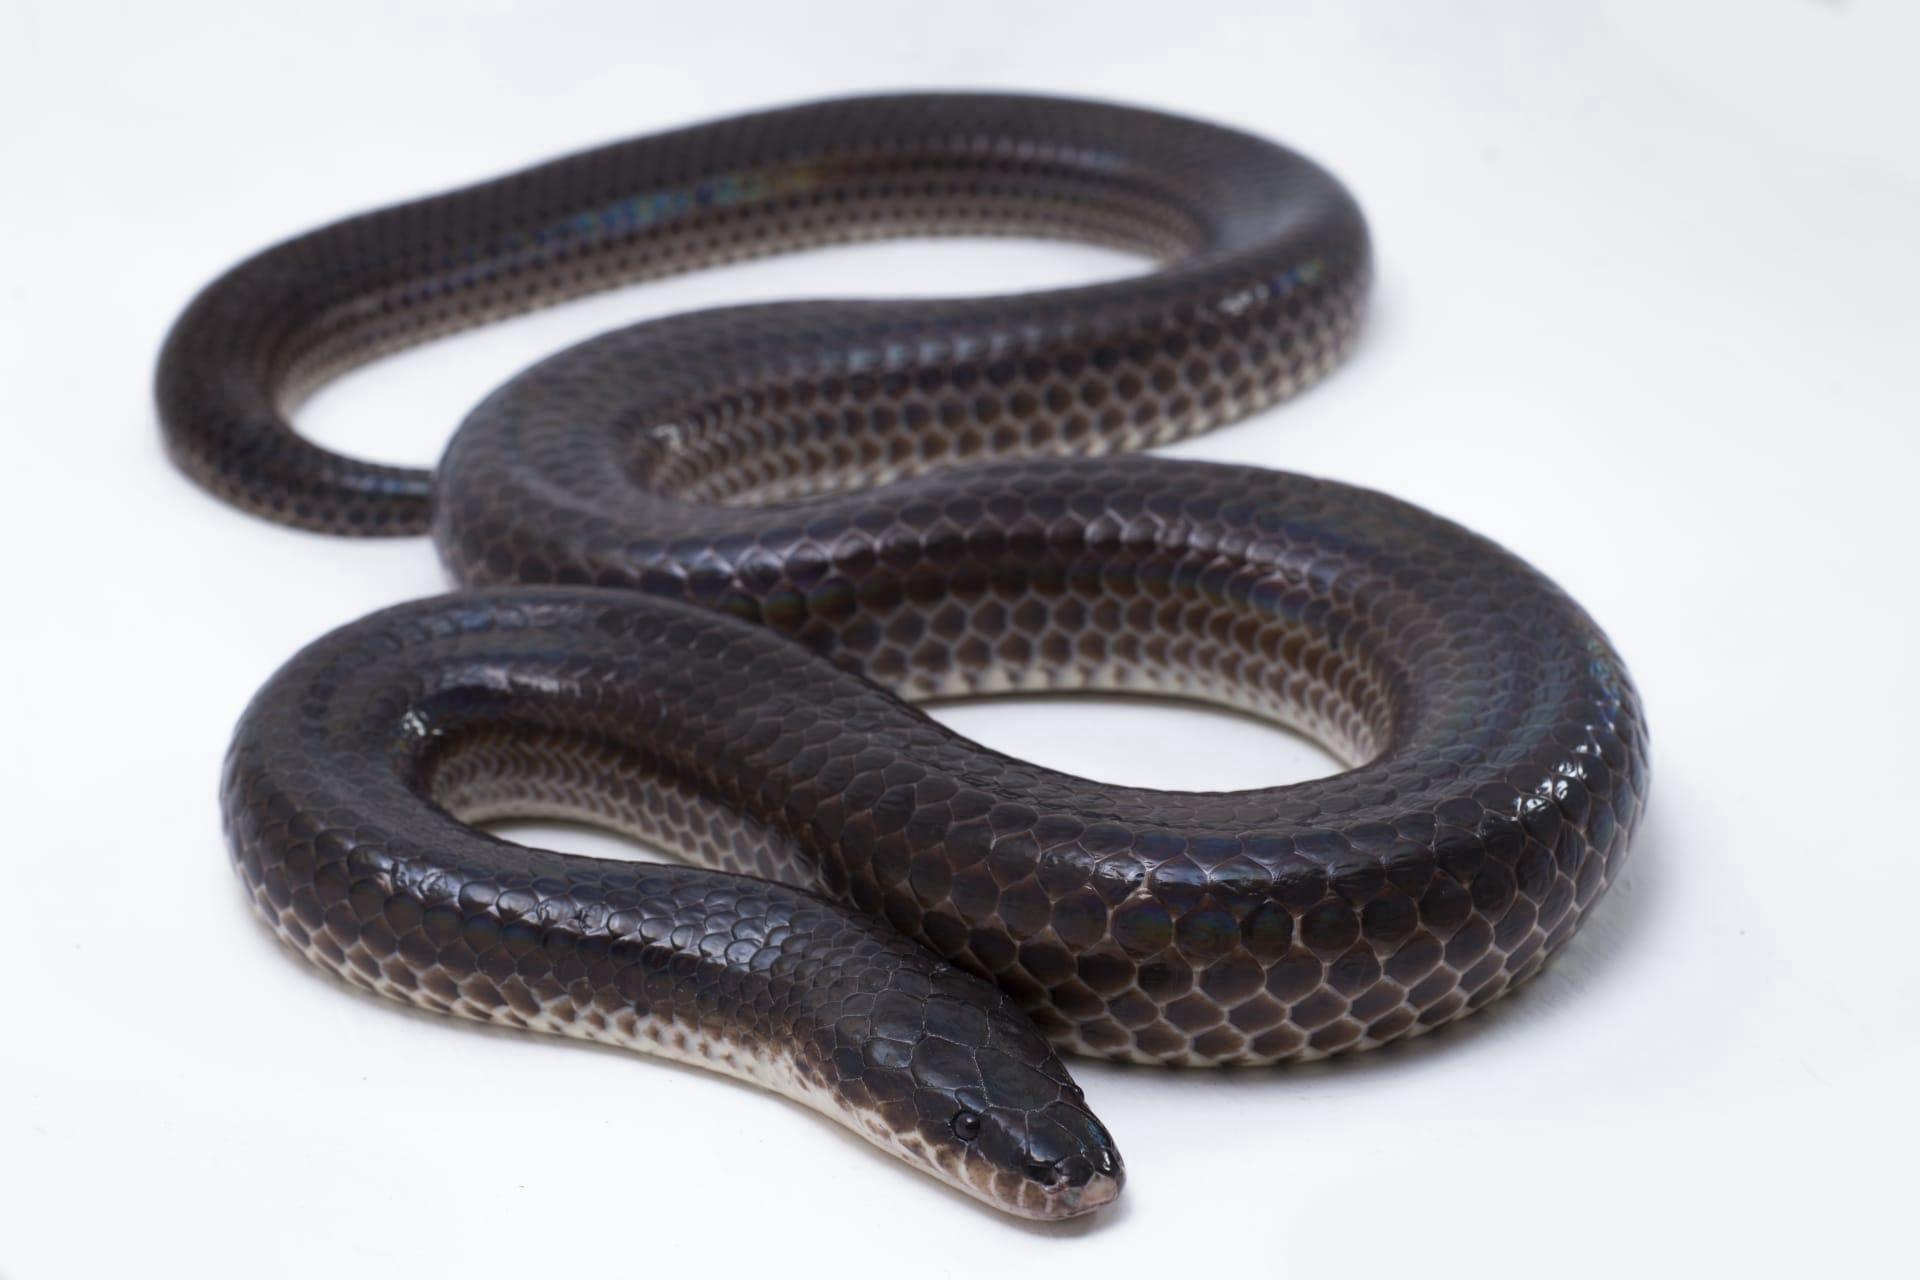 Black rat snake pictures